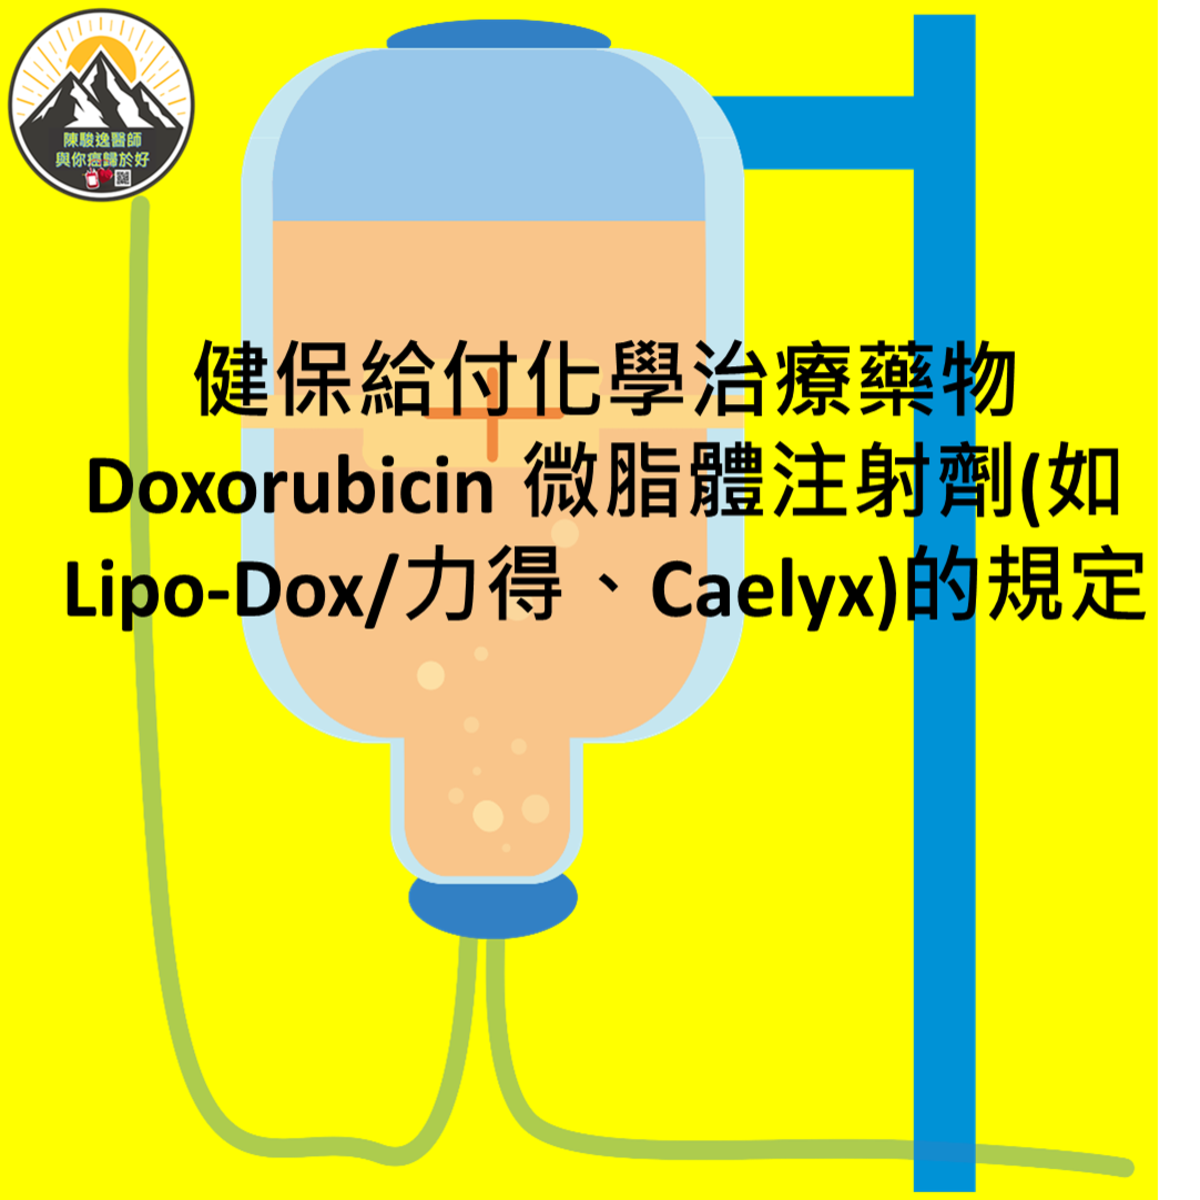 健保給付化學治療藥物Doxorubicin 微脂體注射劑(如Lipo-Dox/力得、Caelyx)的規定